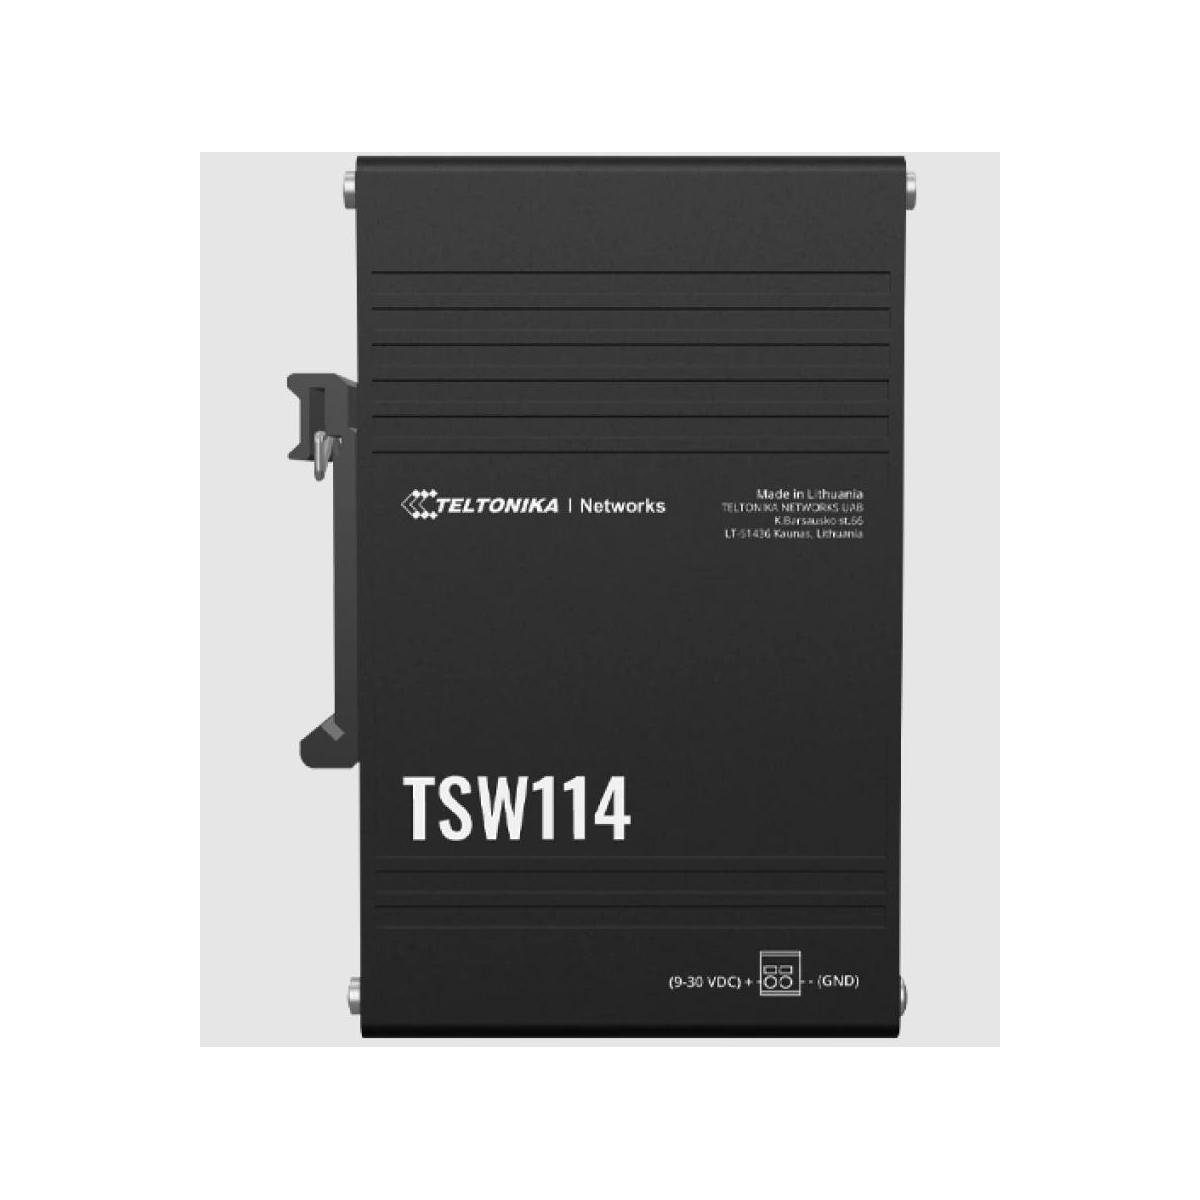 Teltonika mit DIN-Schienenhalterung TSW114 Netzwerk-Switch integrierter Switch -